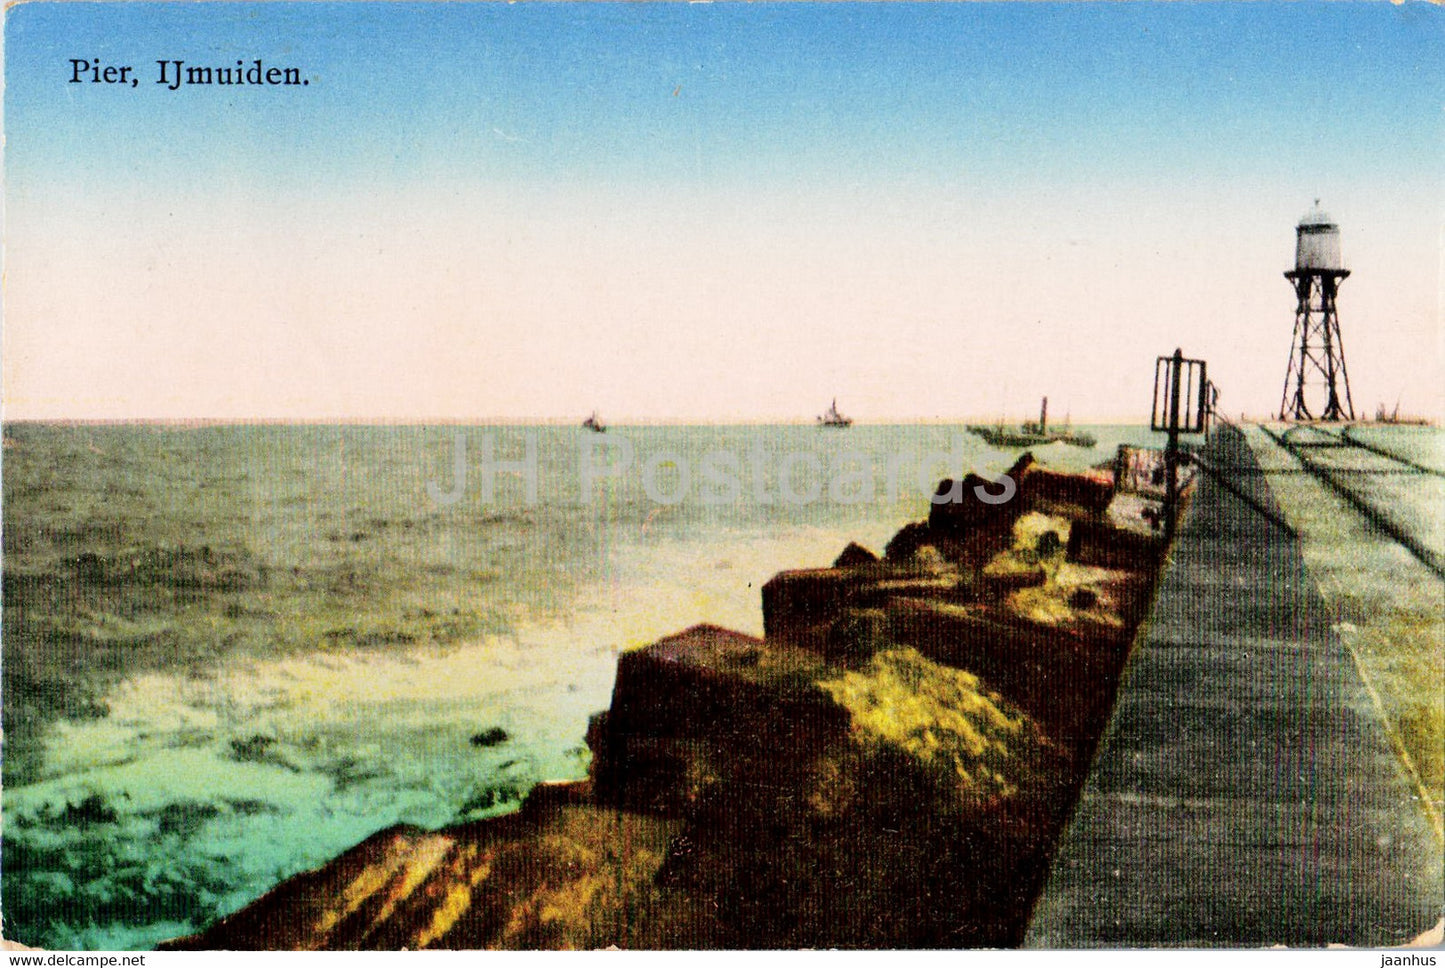 Pier - Ijmuiden - old postcard - 1920 - Netherlands - used - JH Postcards